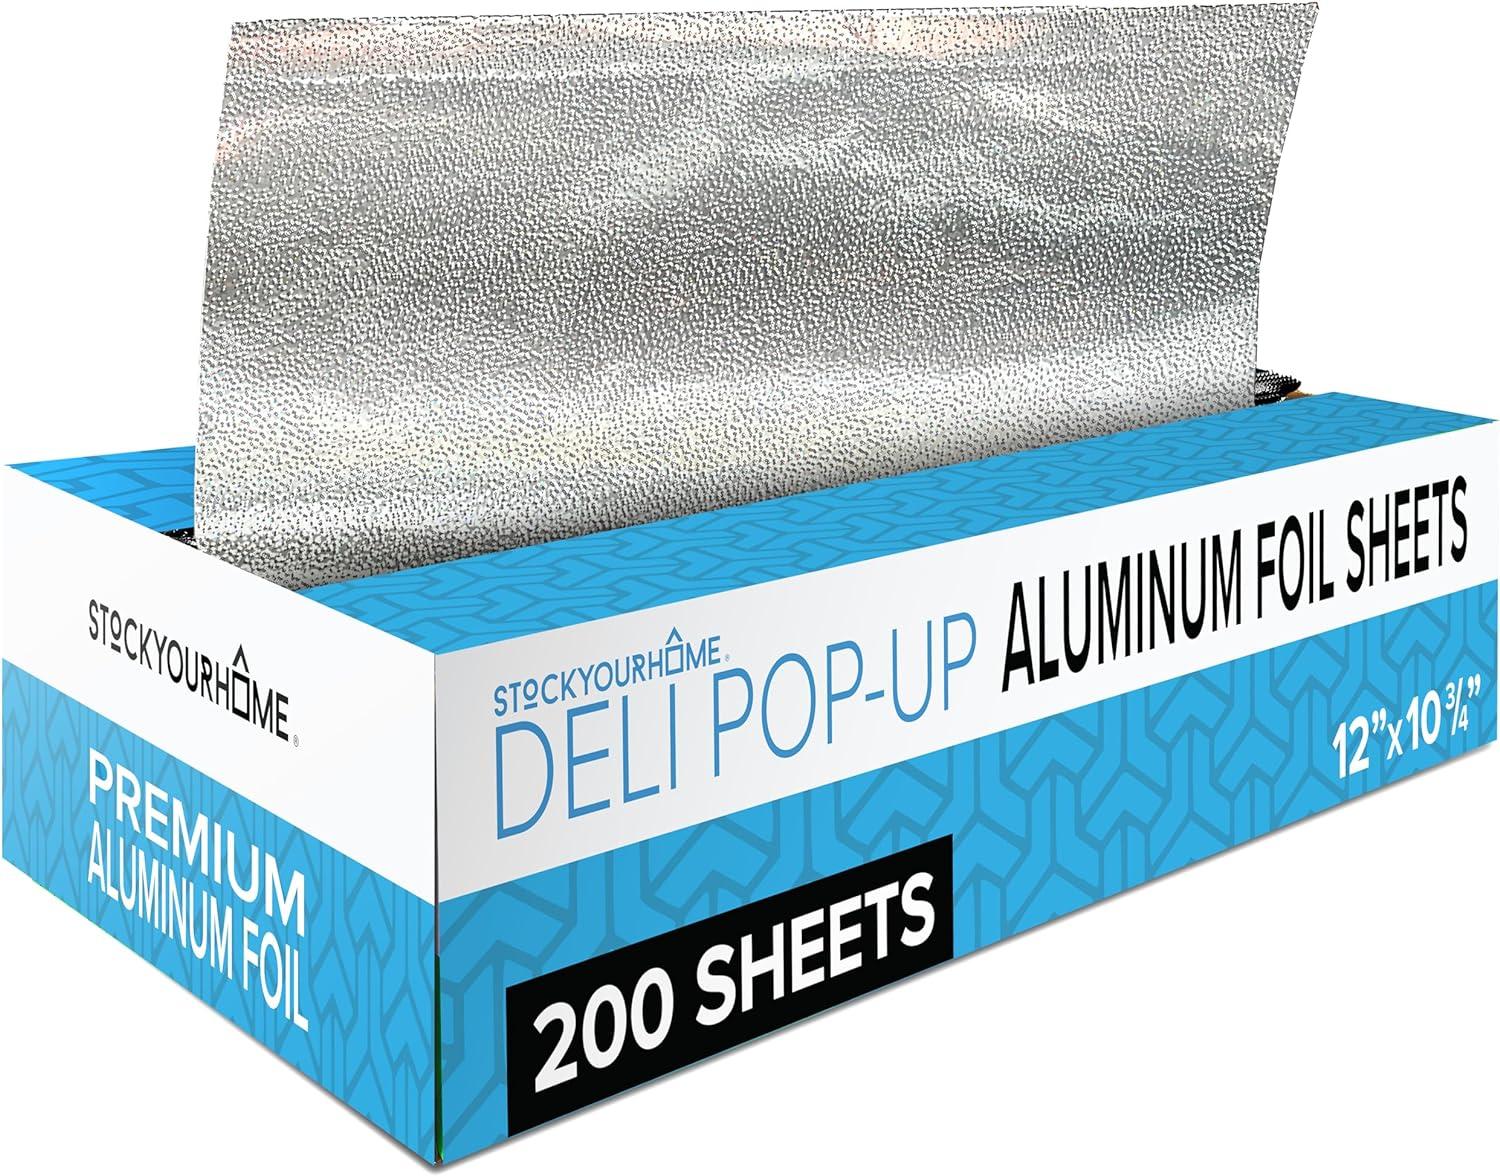 Pre-Cut Pop-Up Aluminum Foil Sheets 200 Pack for $8.18